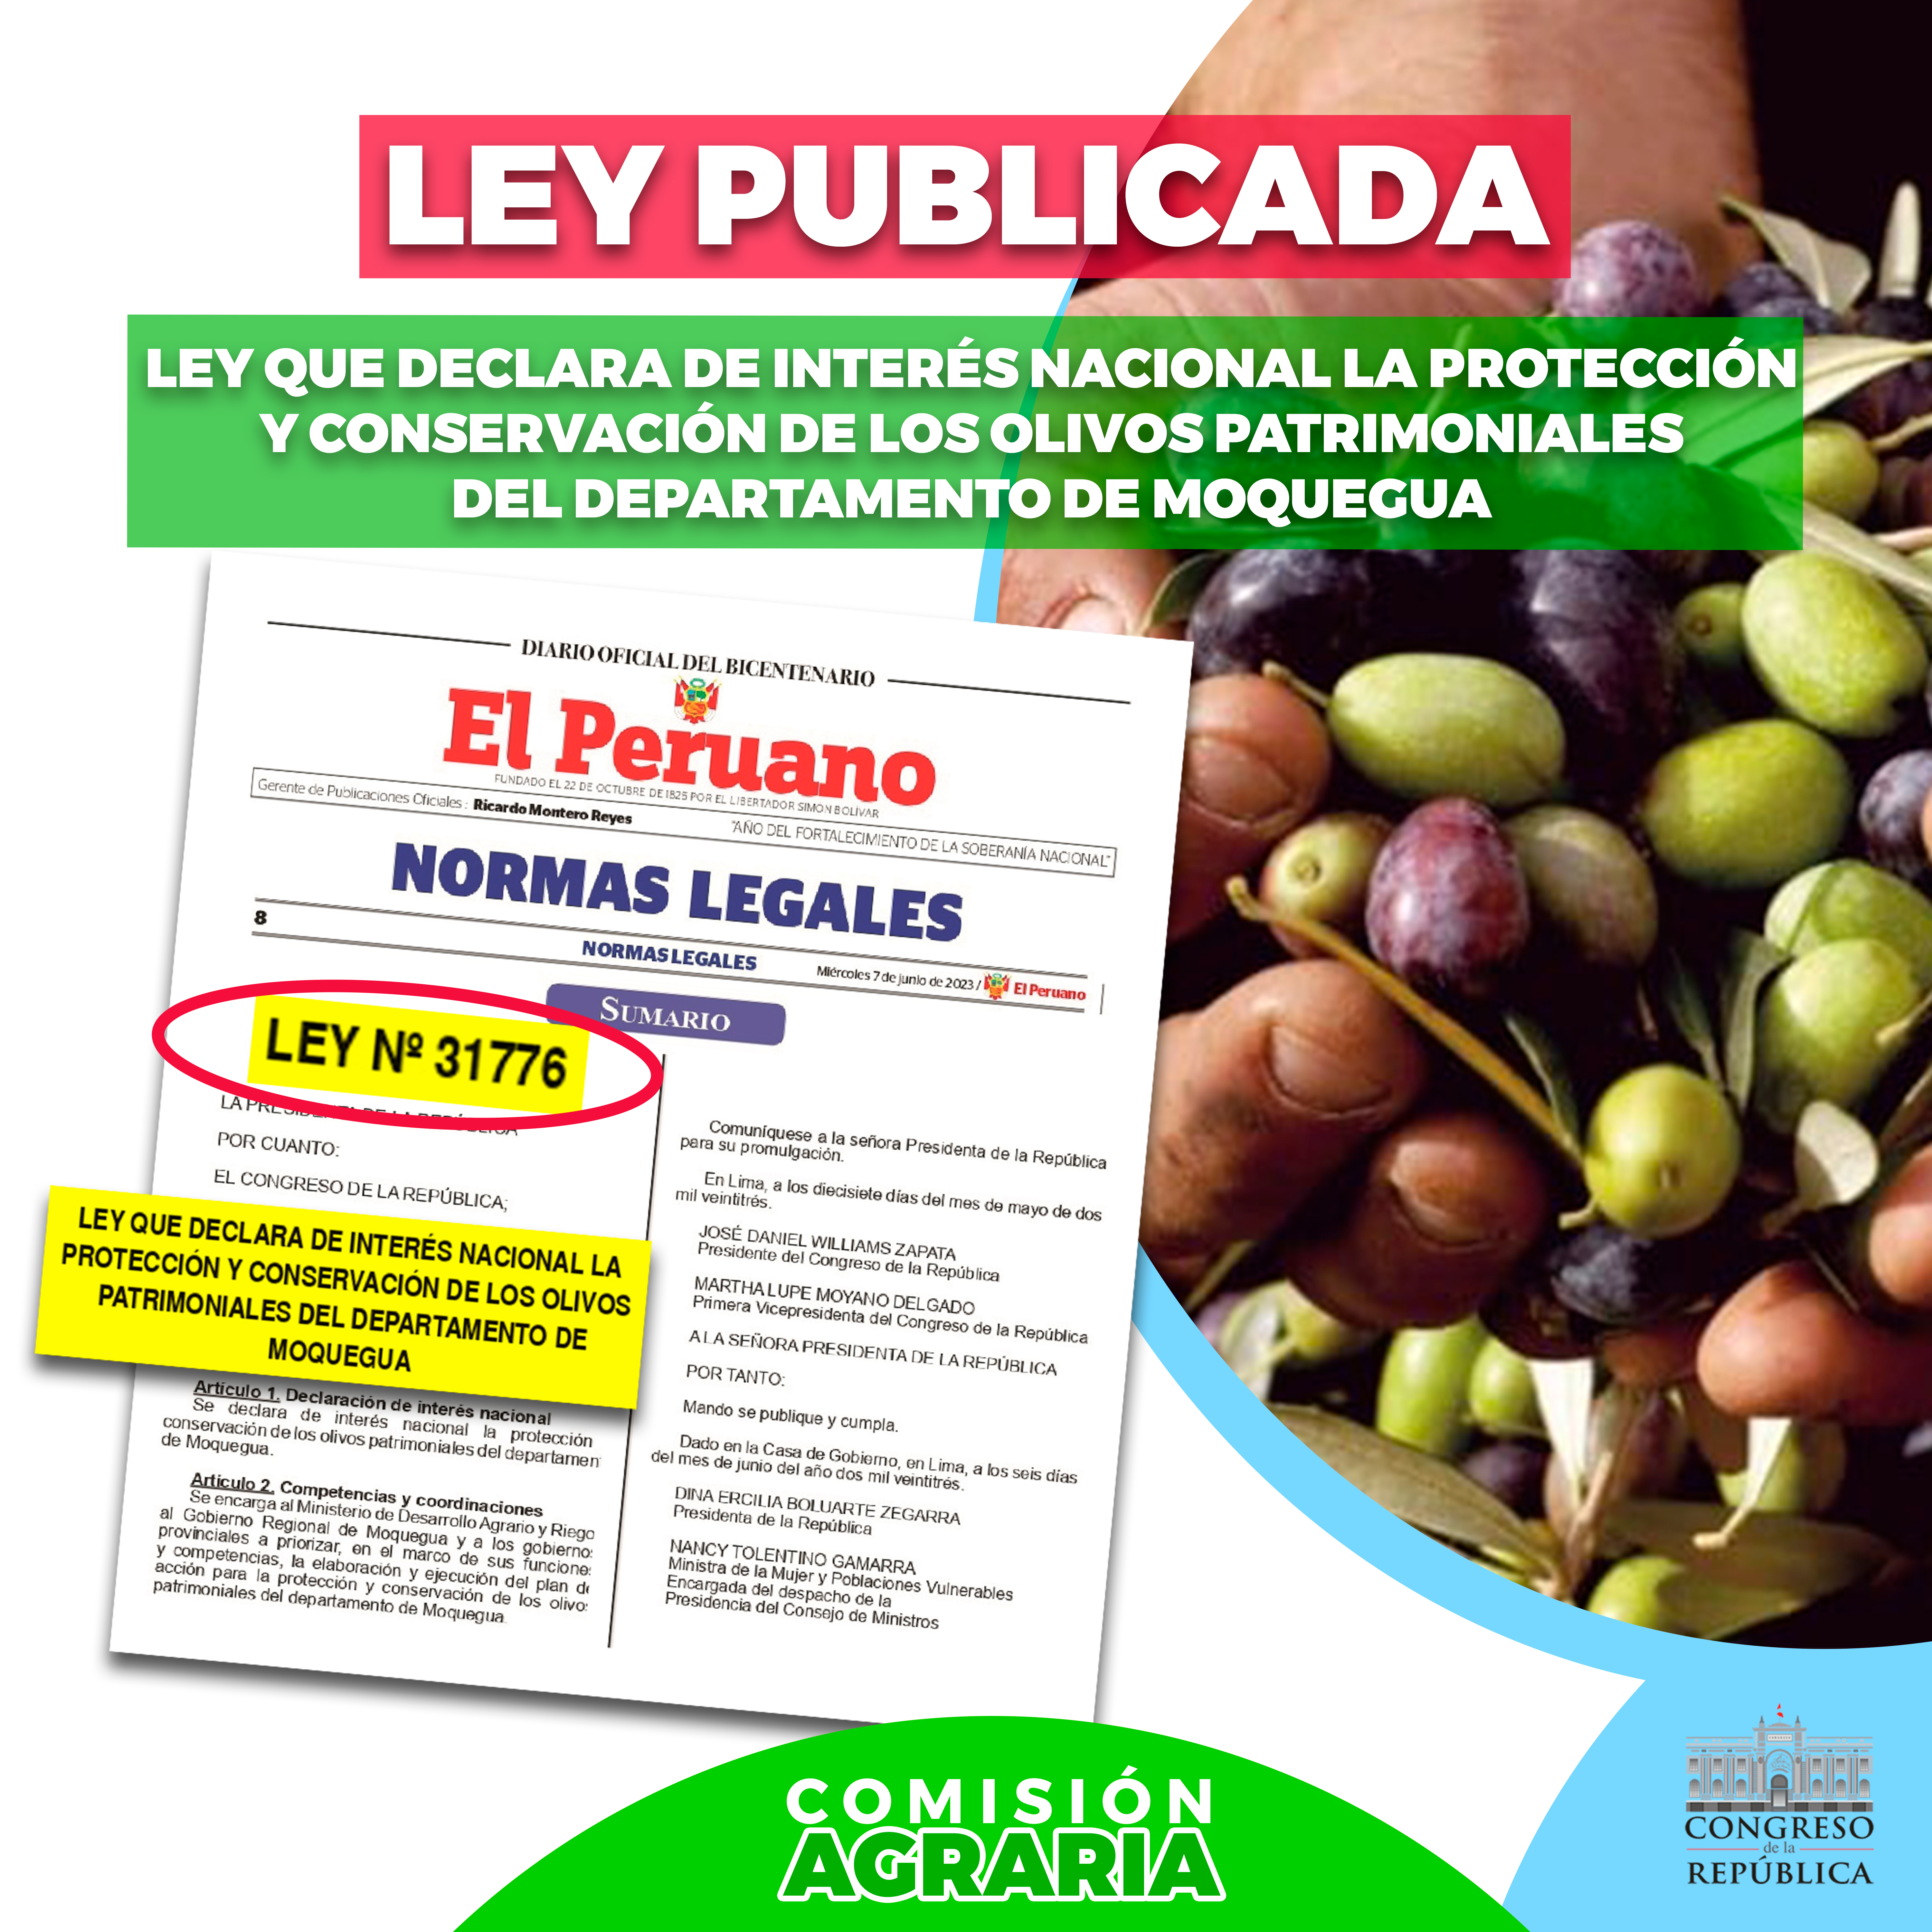 LEY PUBLICADA OLIVOS PATRIMONIALES